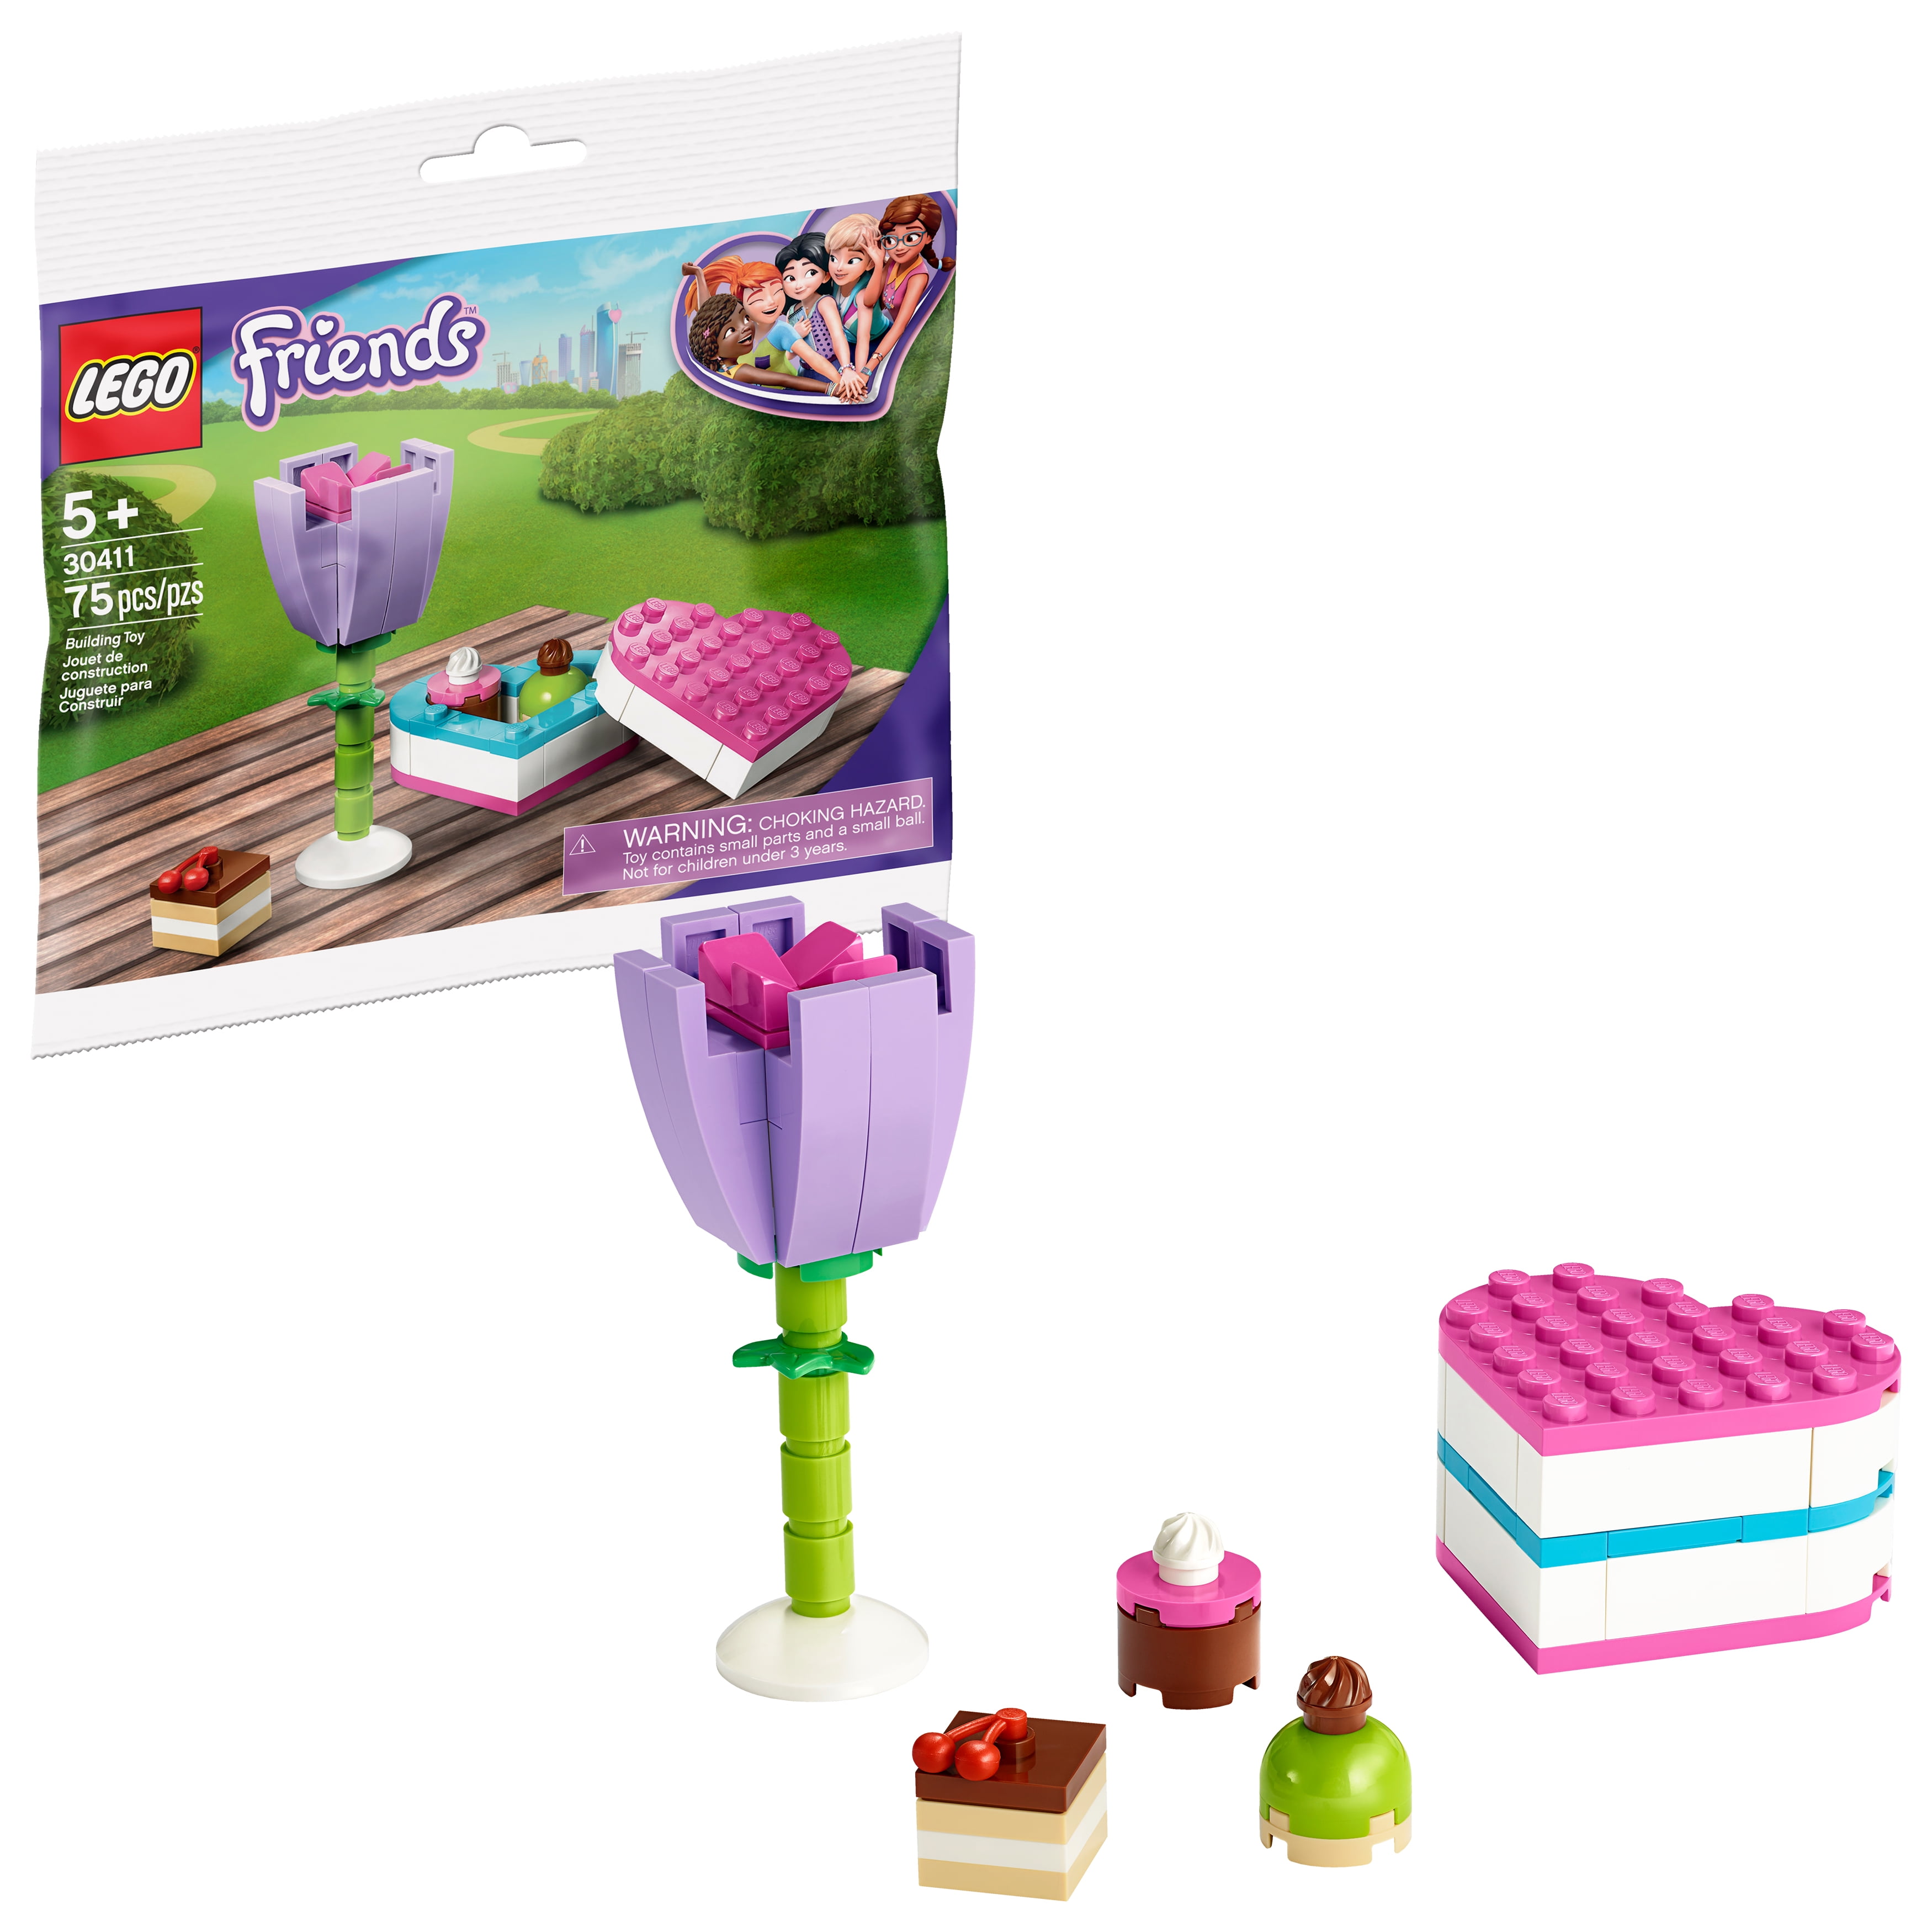 LEGO Chocolate Box & Flower 30411 Building (75 Pieces) - Walmart.com